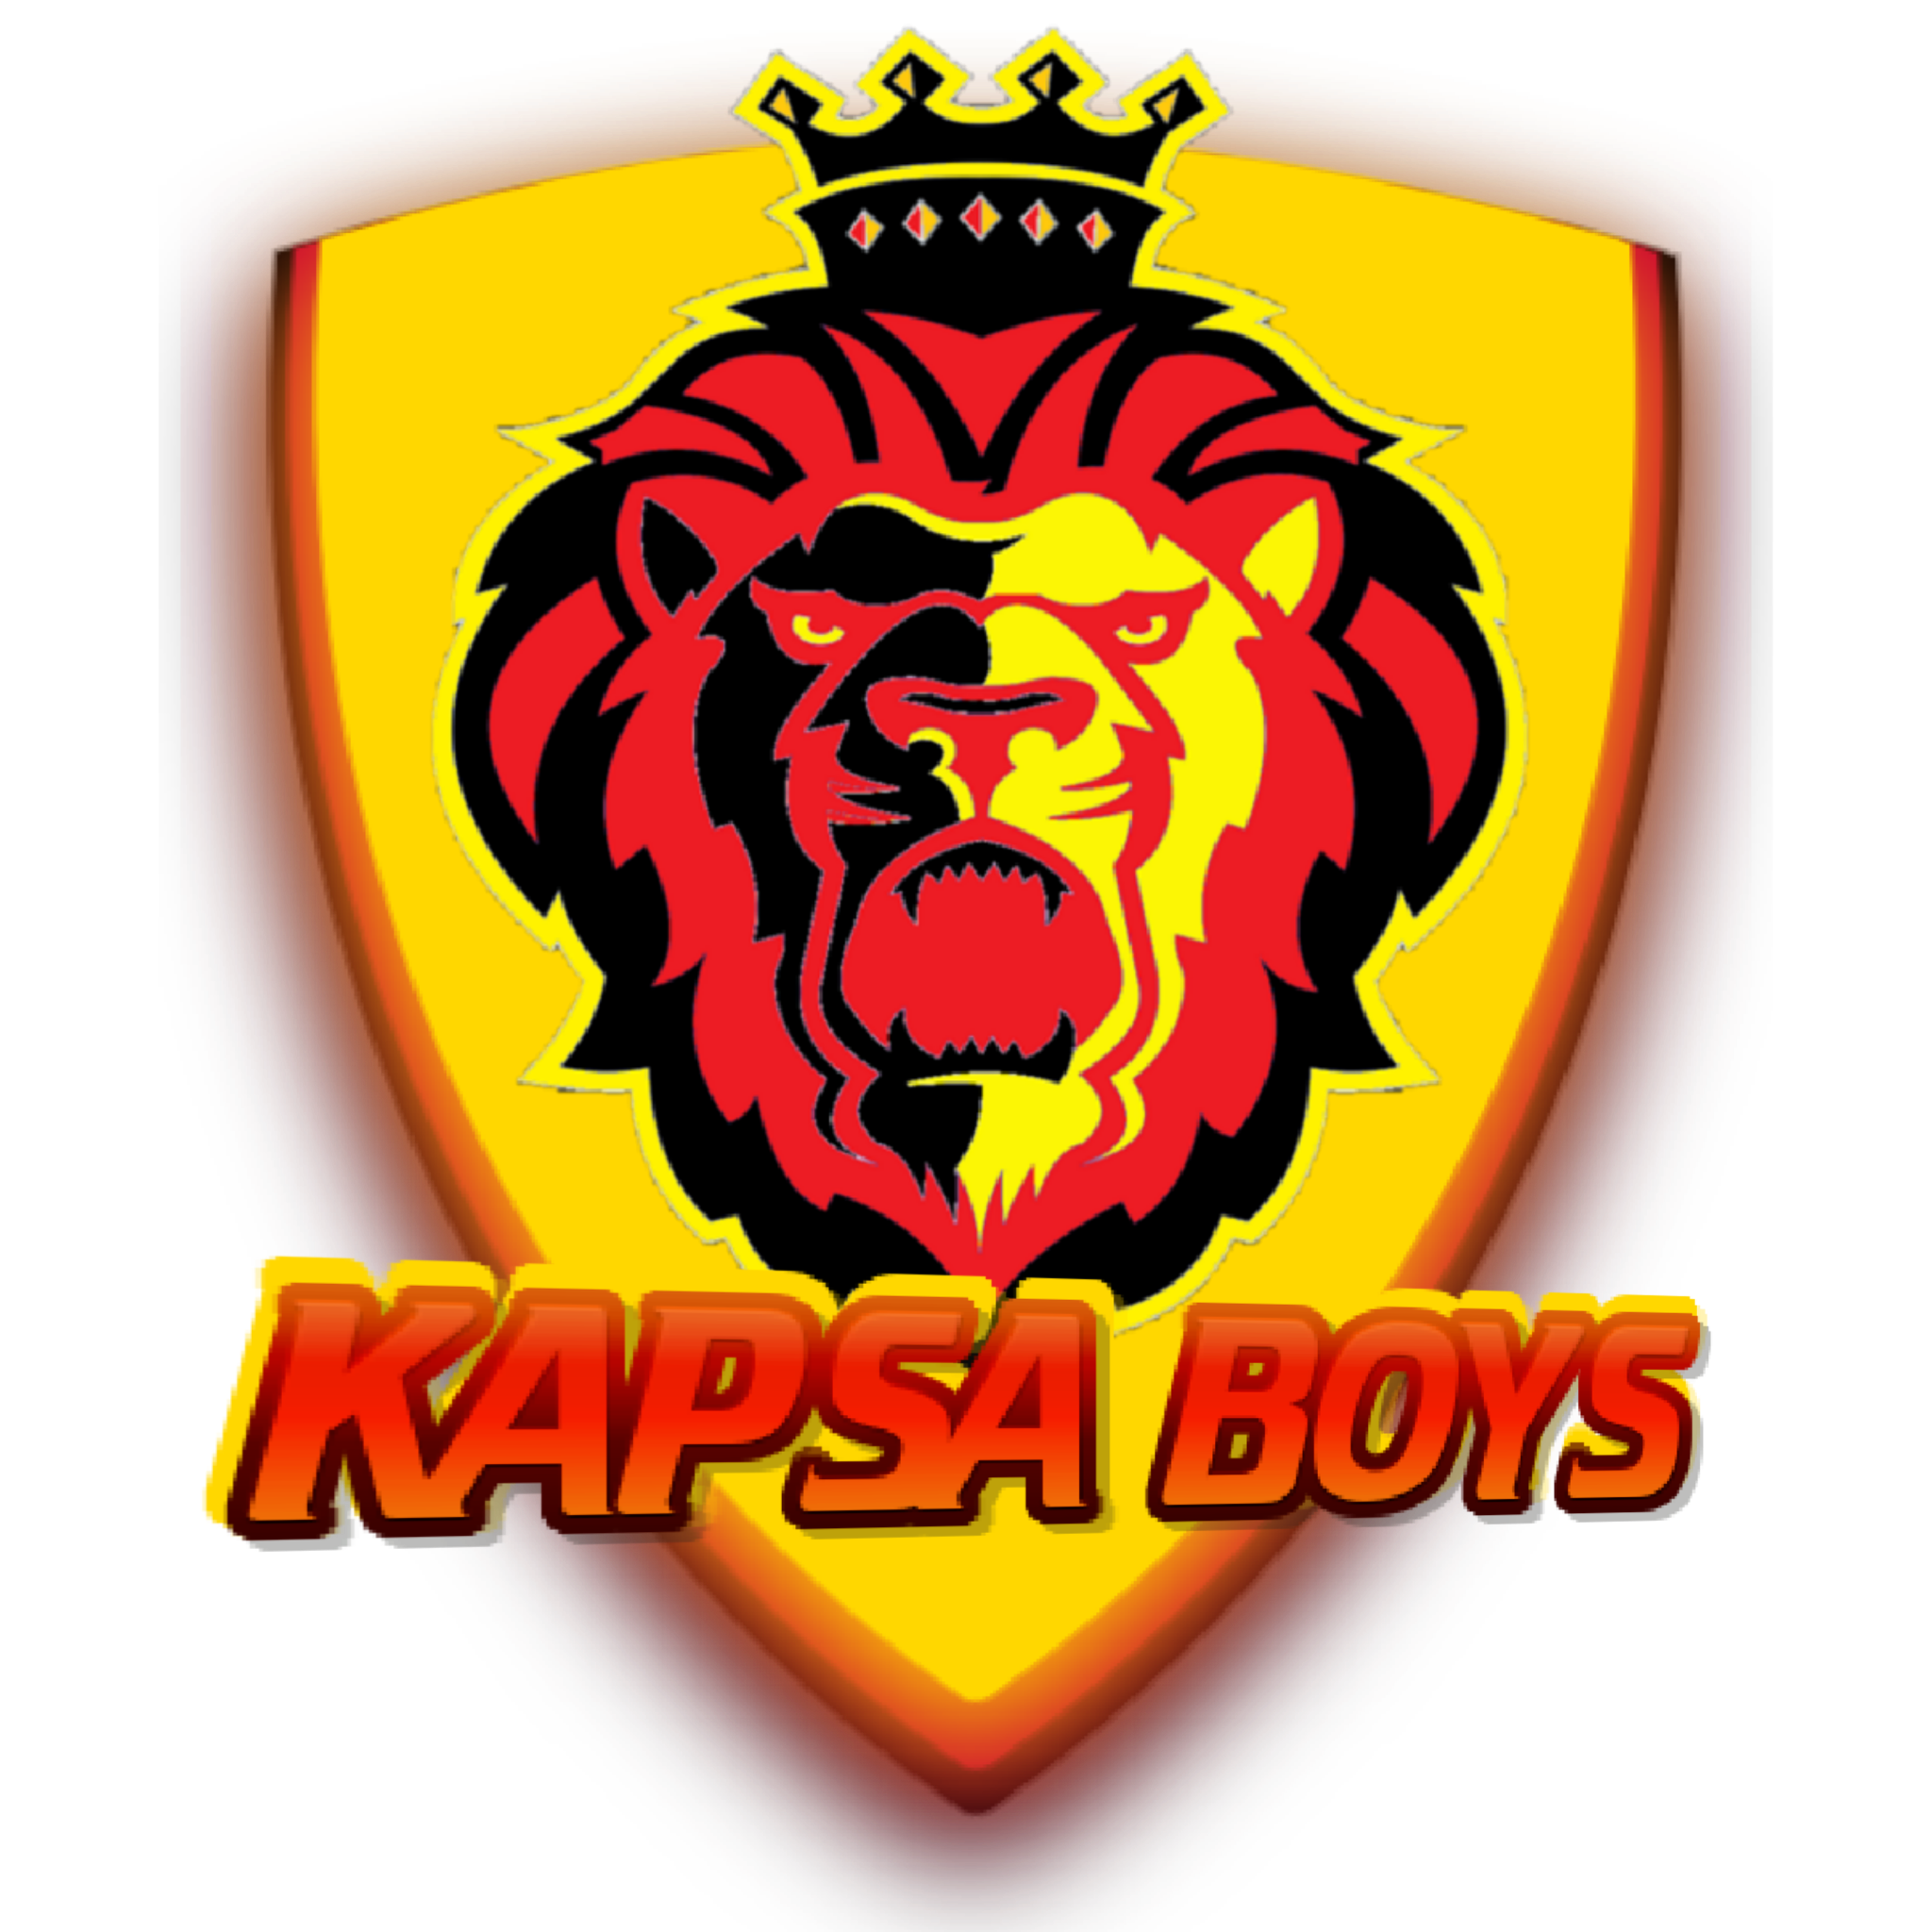 Kapsa Boys